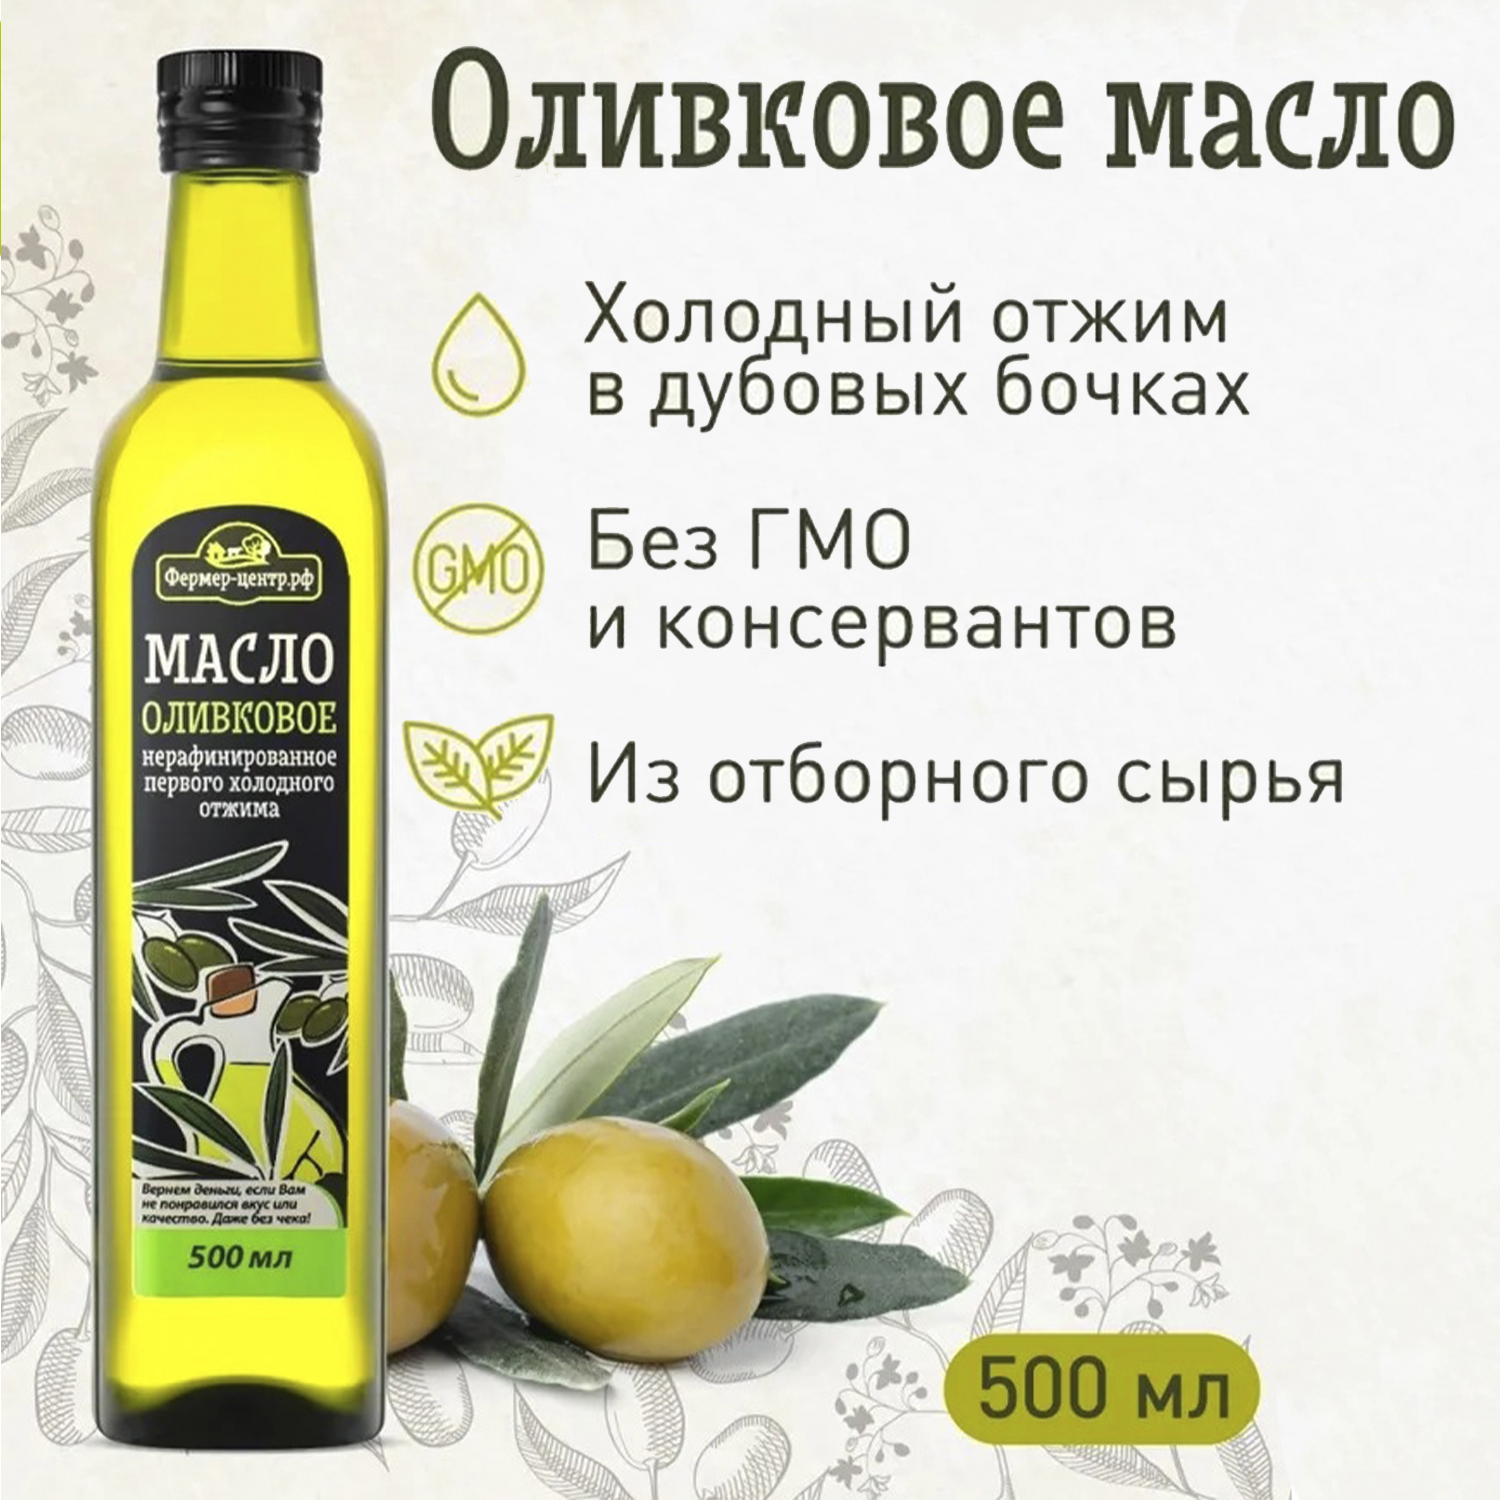 Olive oil threesome bath pjs